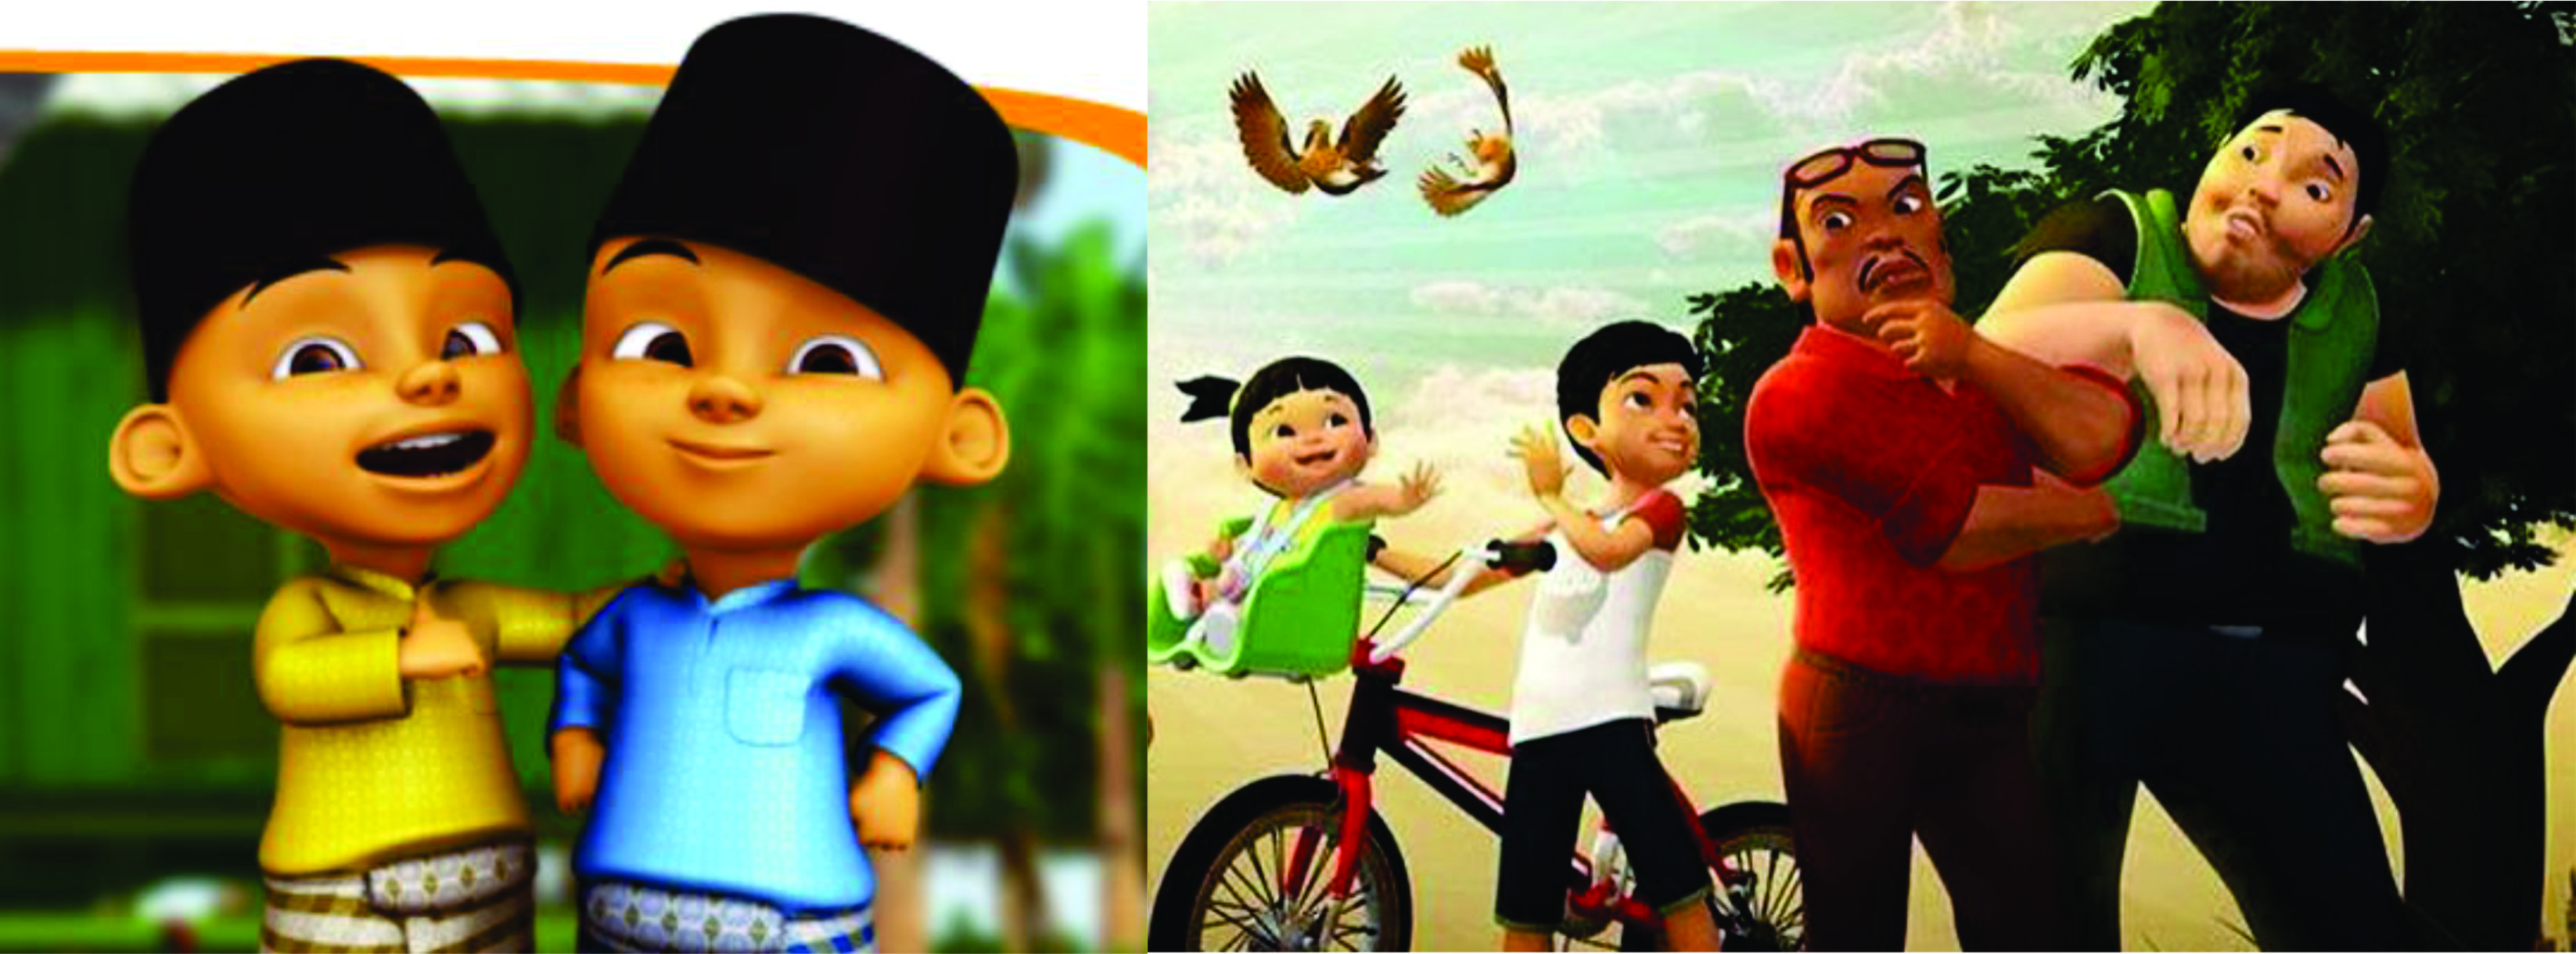 Serial Animasi Bukan Sekadar Hiburan Gerakan Indonesia Cerdas